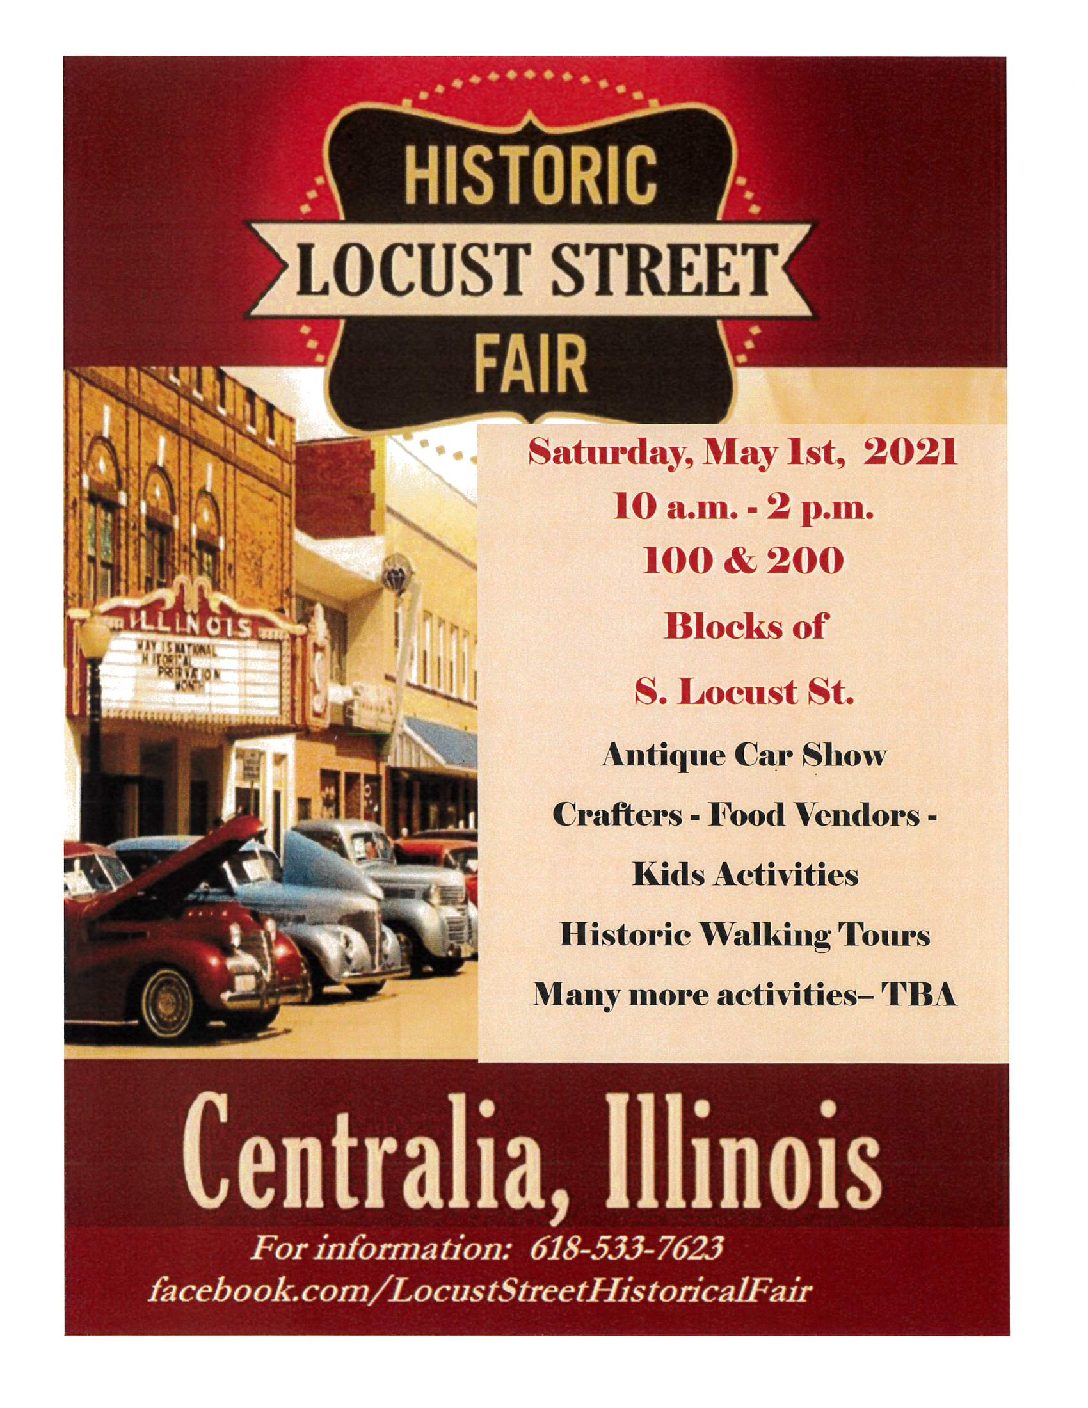 Historic Locust Street Fair See Centralia, Illinois